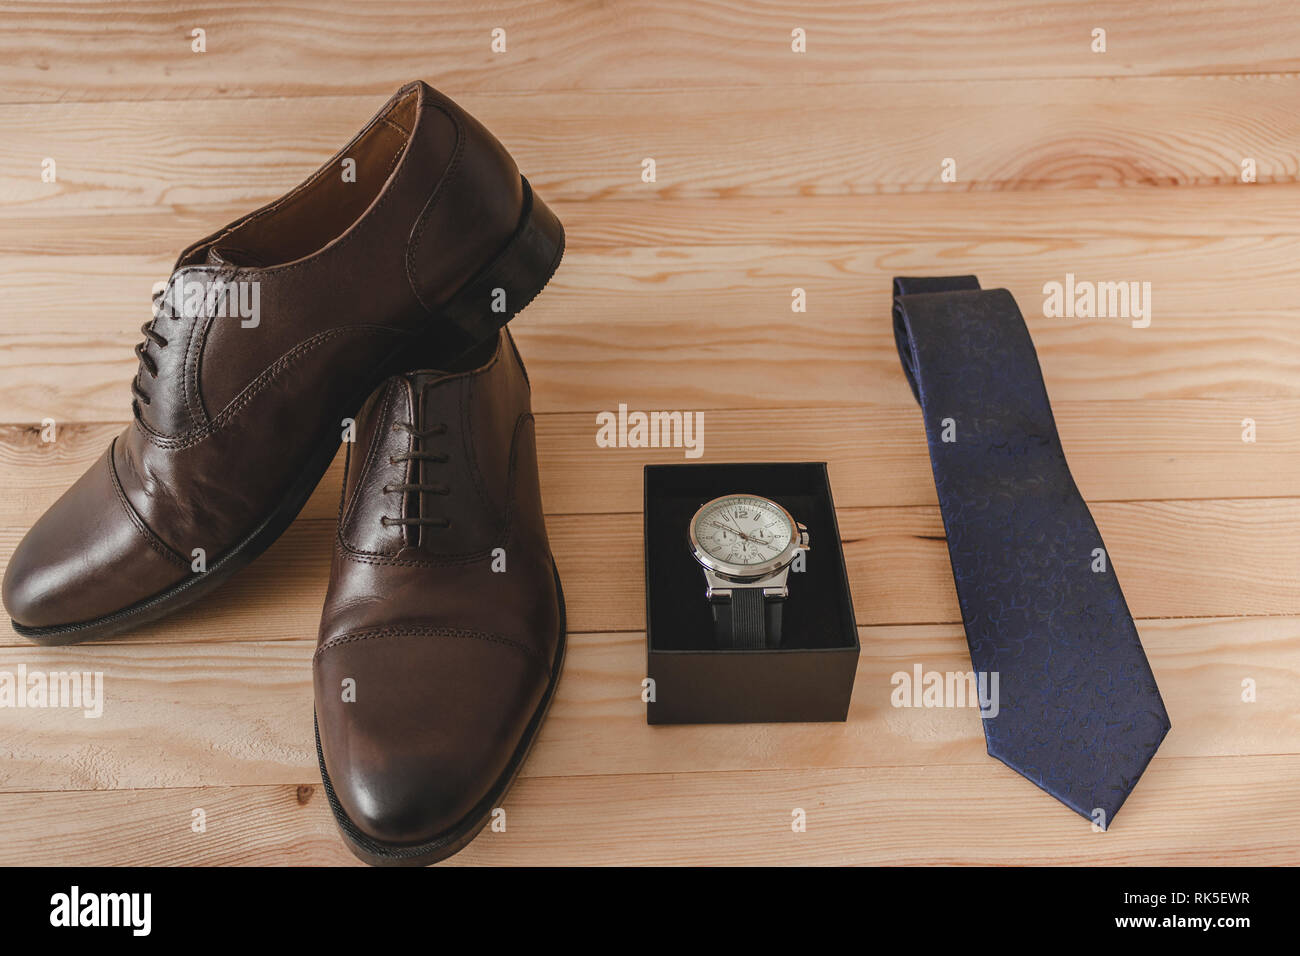 Chaussures, cravate et regarder comme accessoires pour habiller élégamment  Photo Stock - Alamy